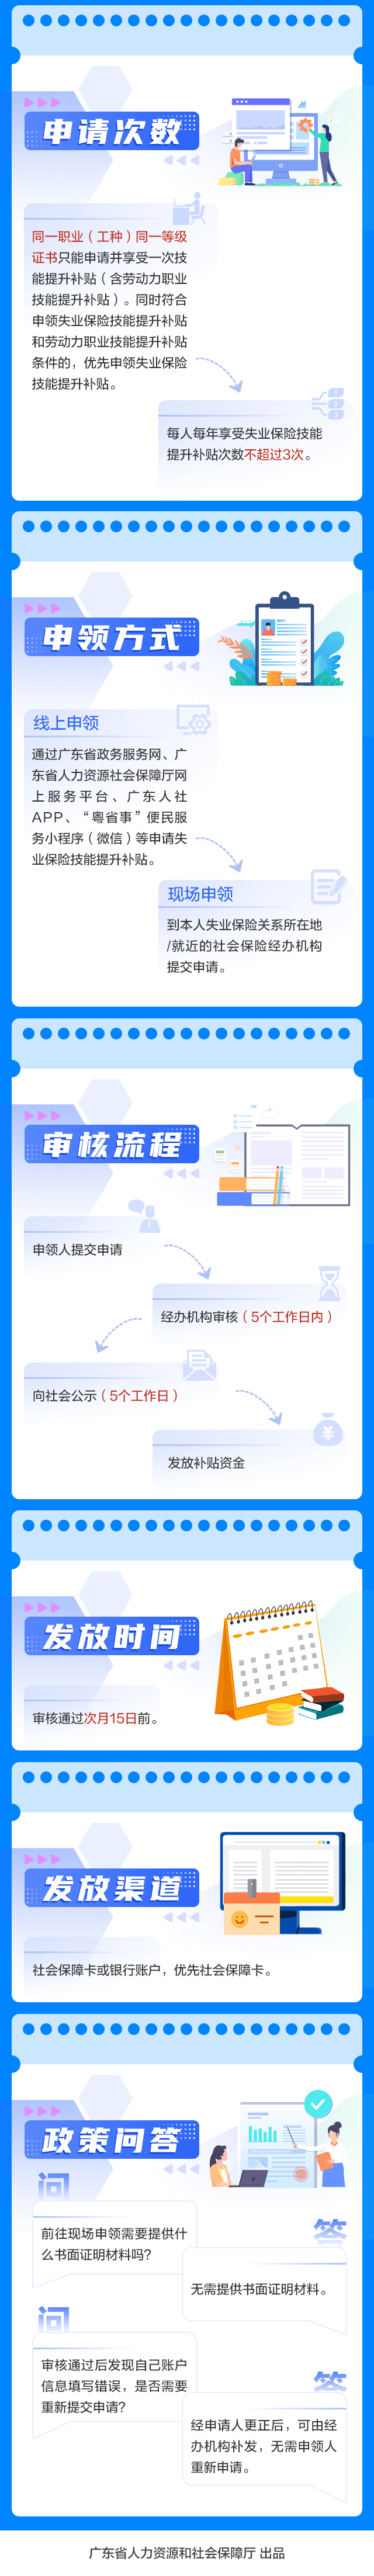 广州失业保险技能提升补贴最新规定